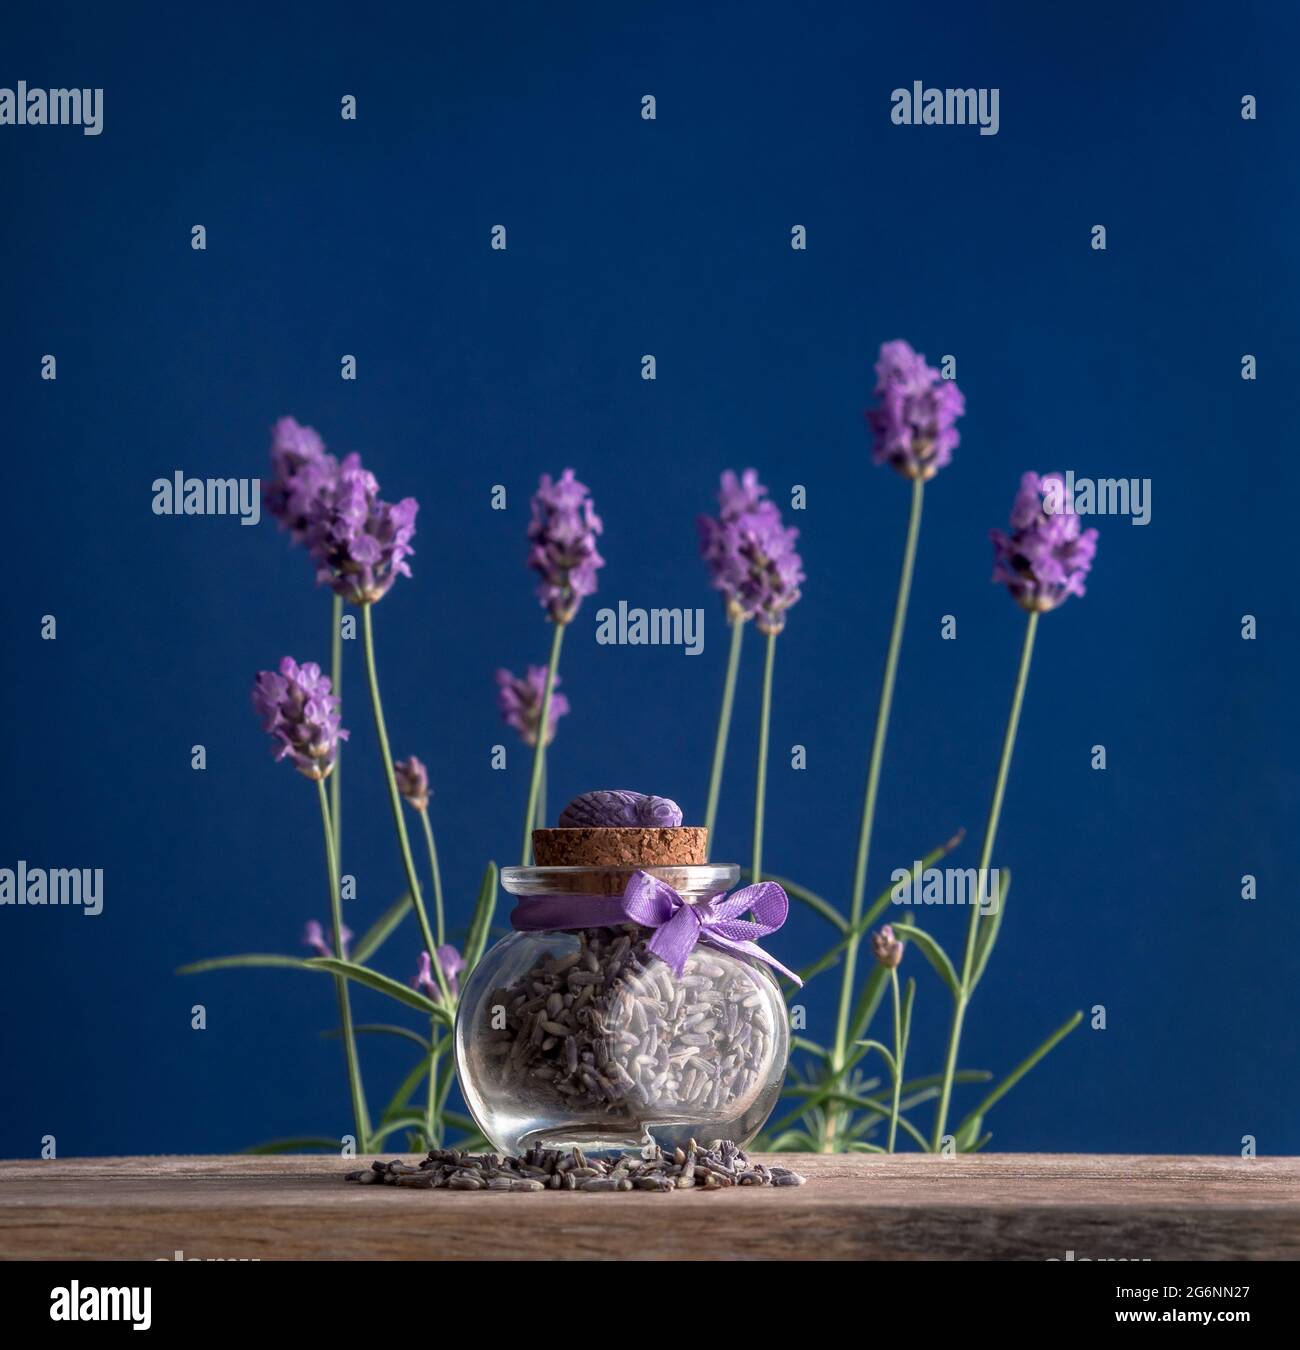 Getrocknete Lavendelknospen in einem kleinen Glas auf einem Holztisch auf blauem Hintergrund mit frischen Blüten von lavanda in weichem Fokus. Aromatische Kräuter-Souvenirs in PR Stockfoto